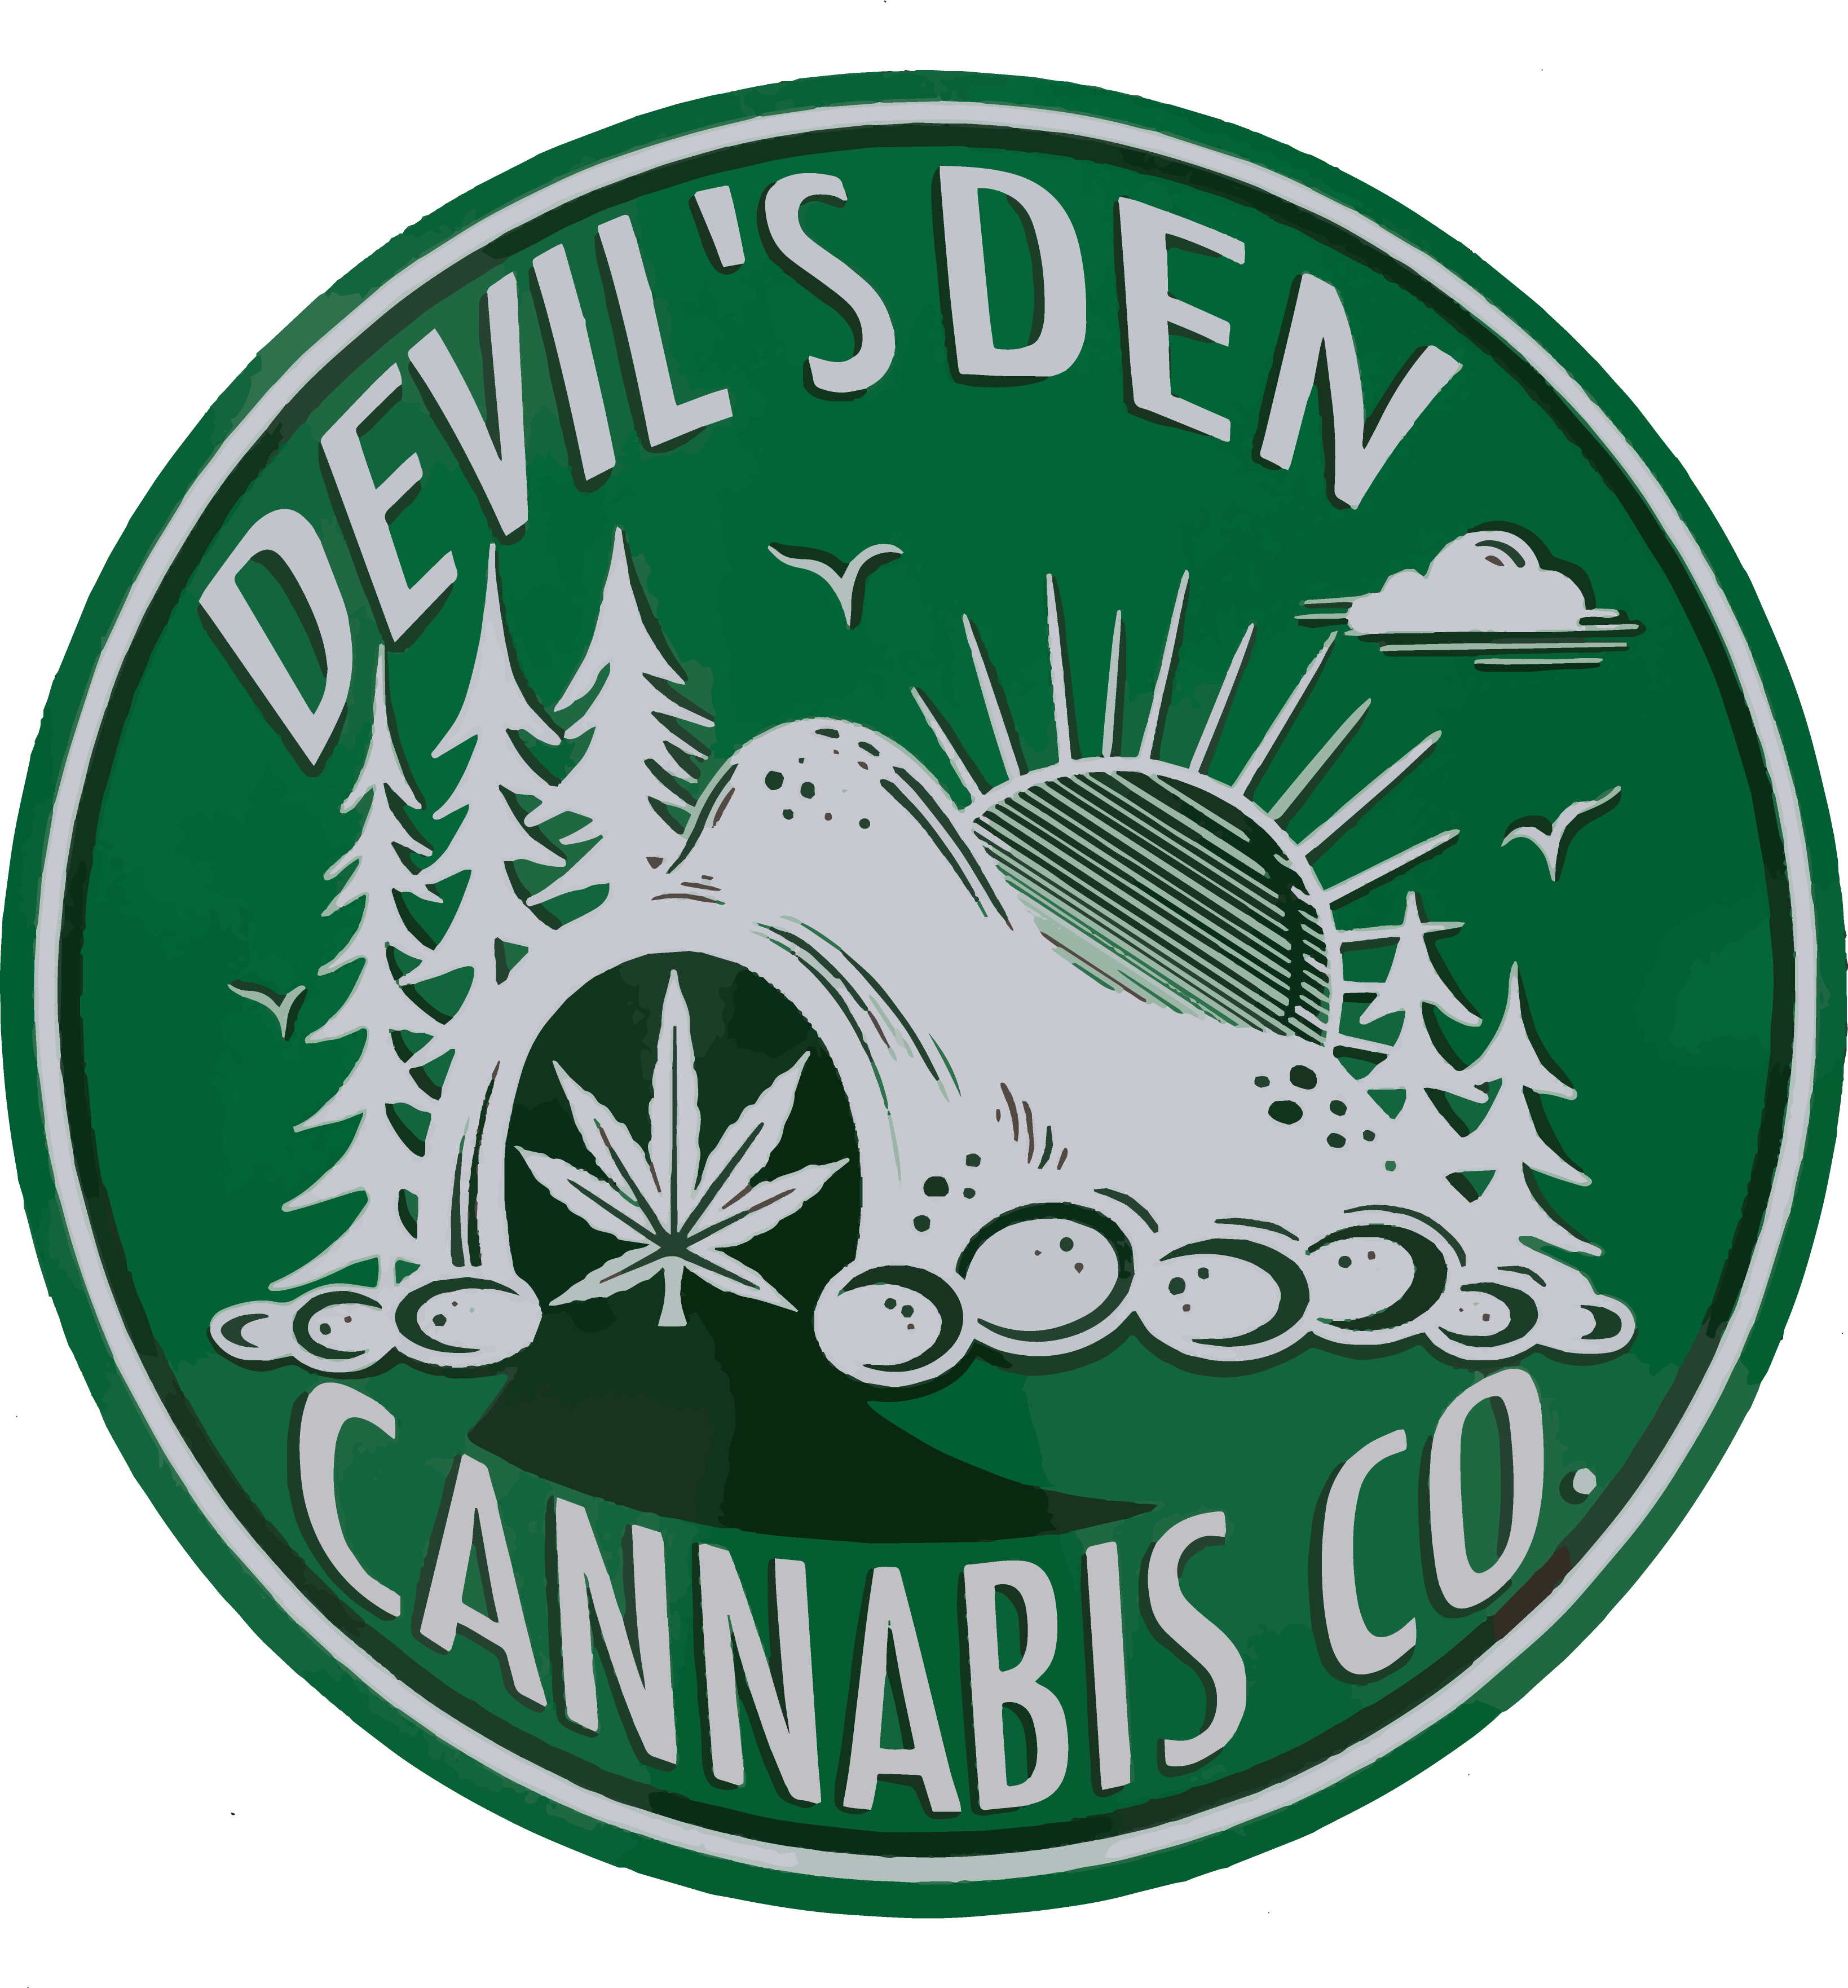 Devil's Den Cannabis Co